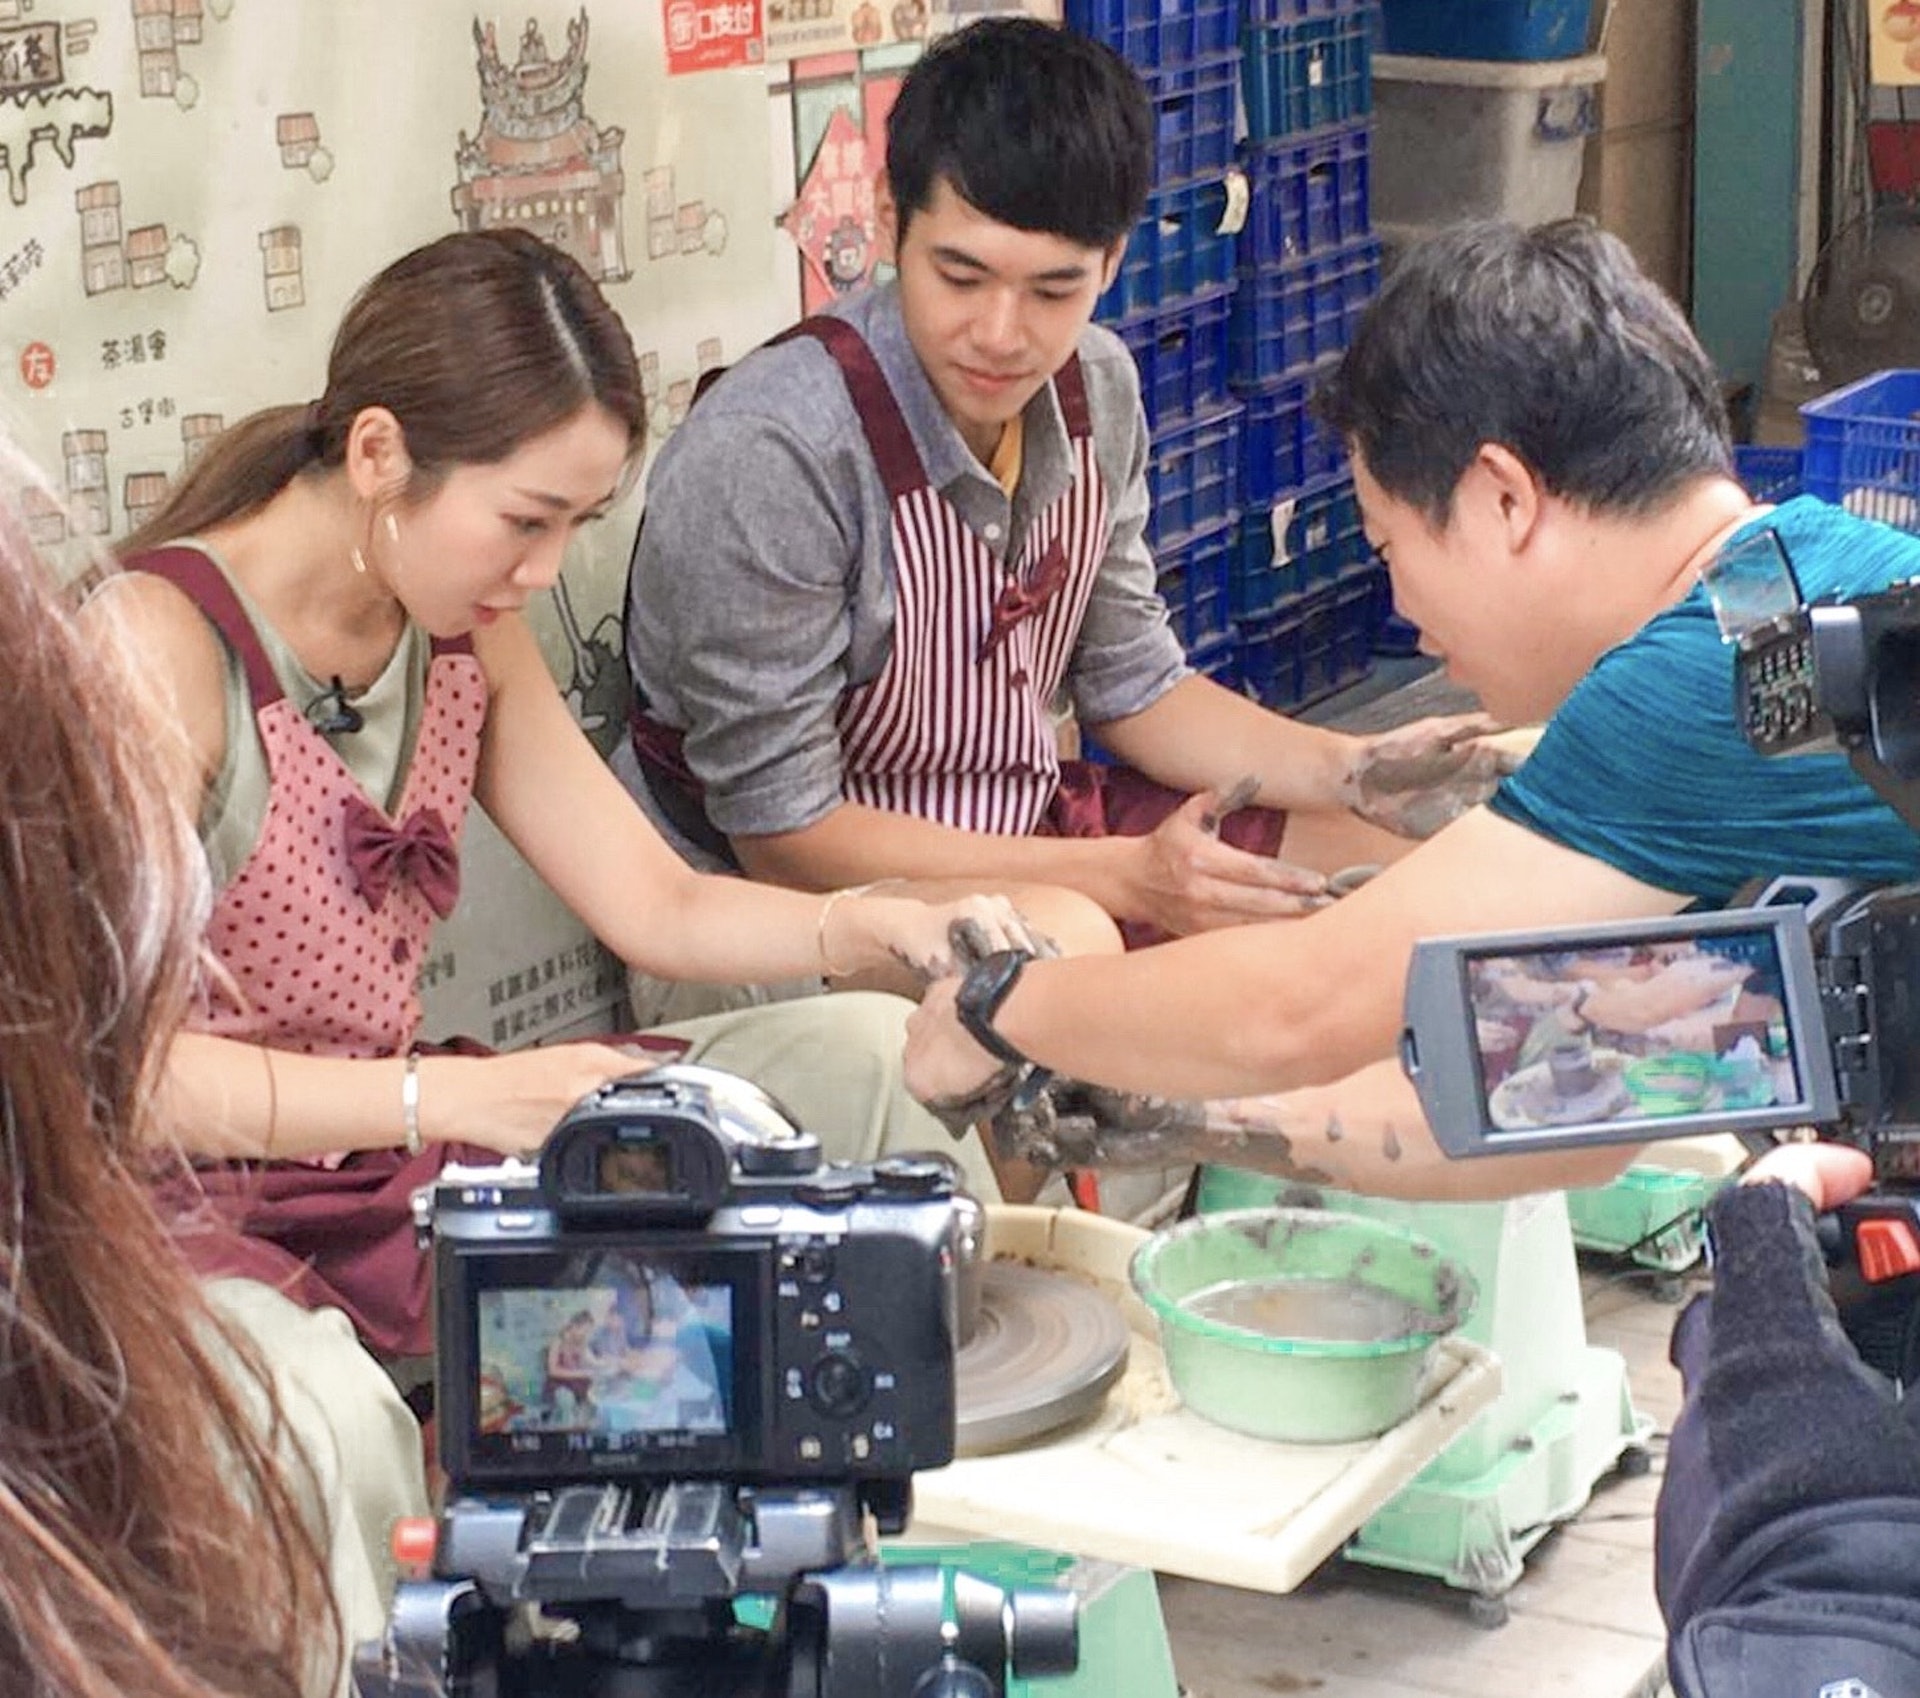 Jessica與拍檔蕭新亭學整陶瓷。